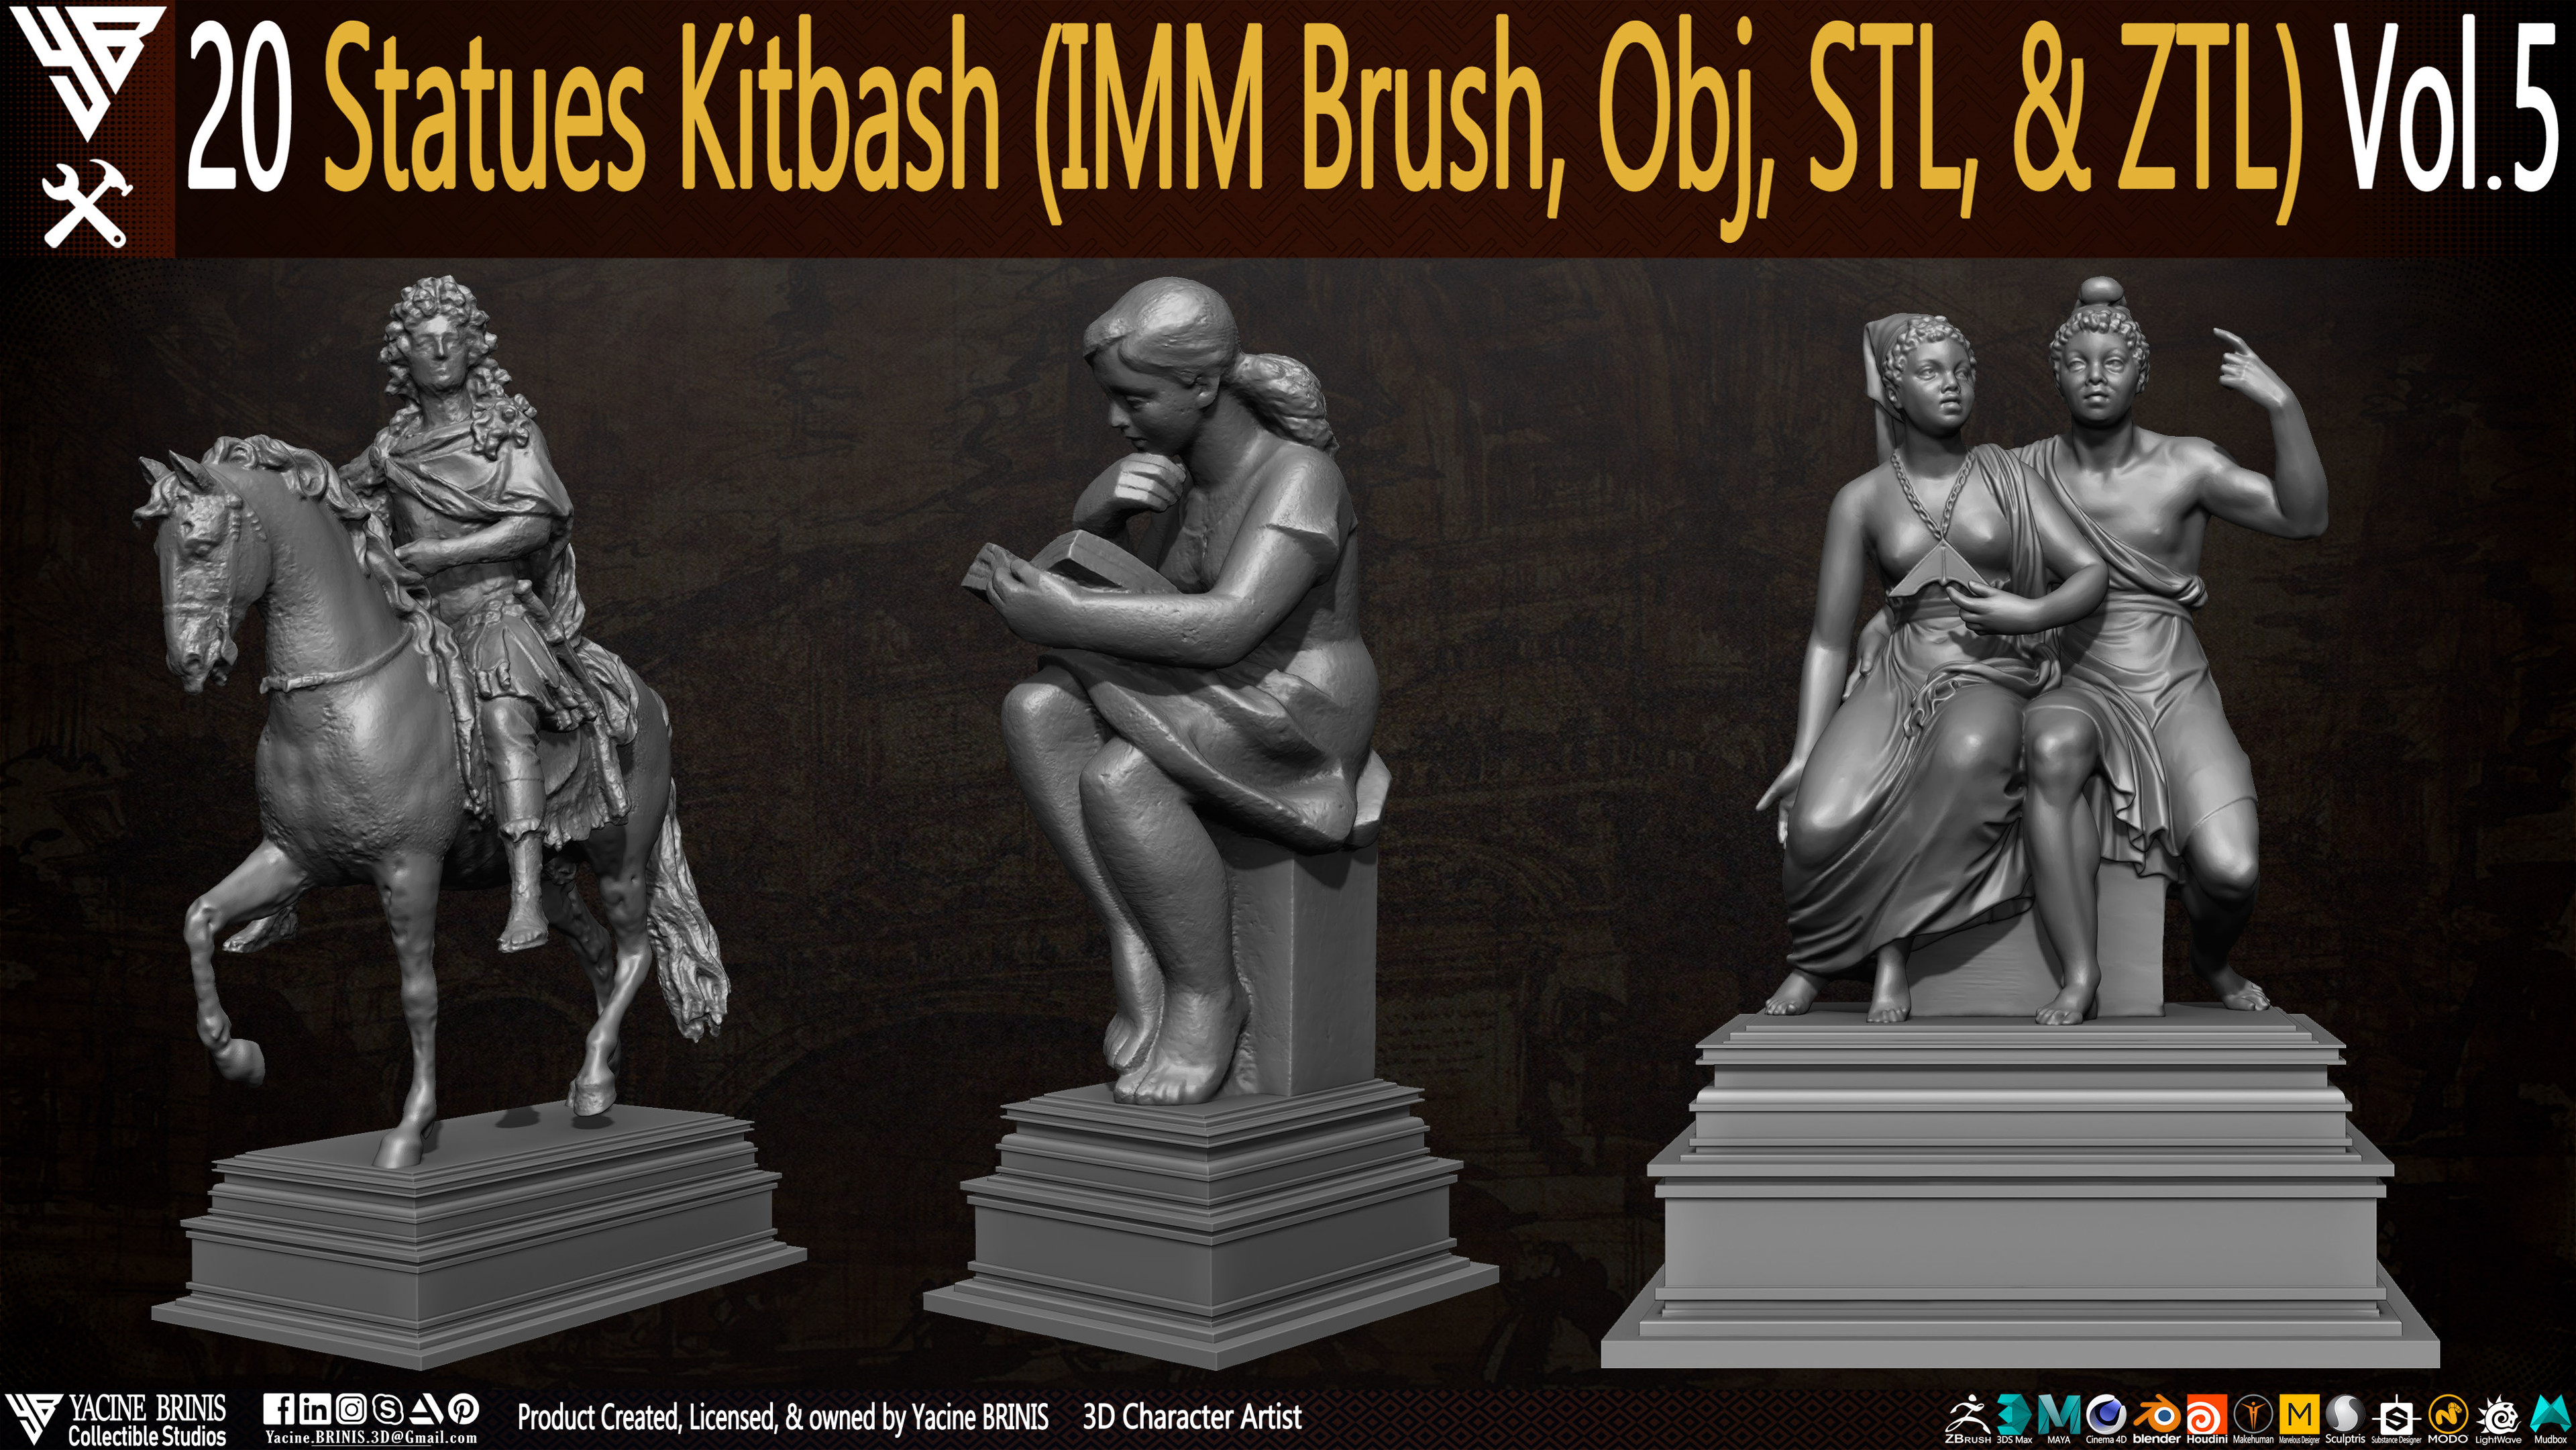 Statues Kitbash by yacine brinis Set 29